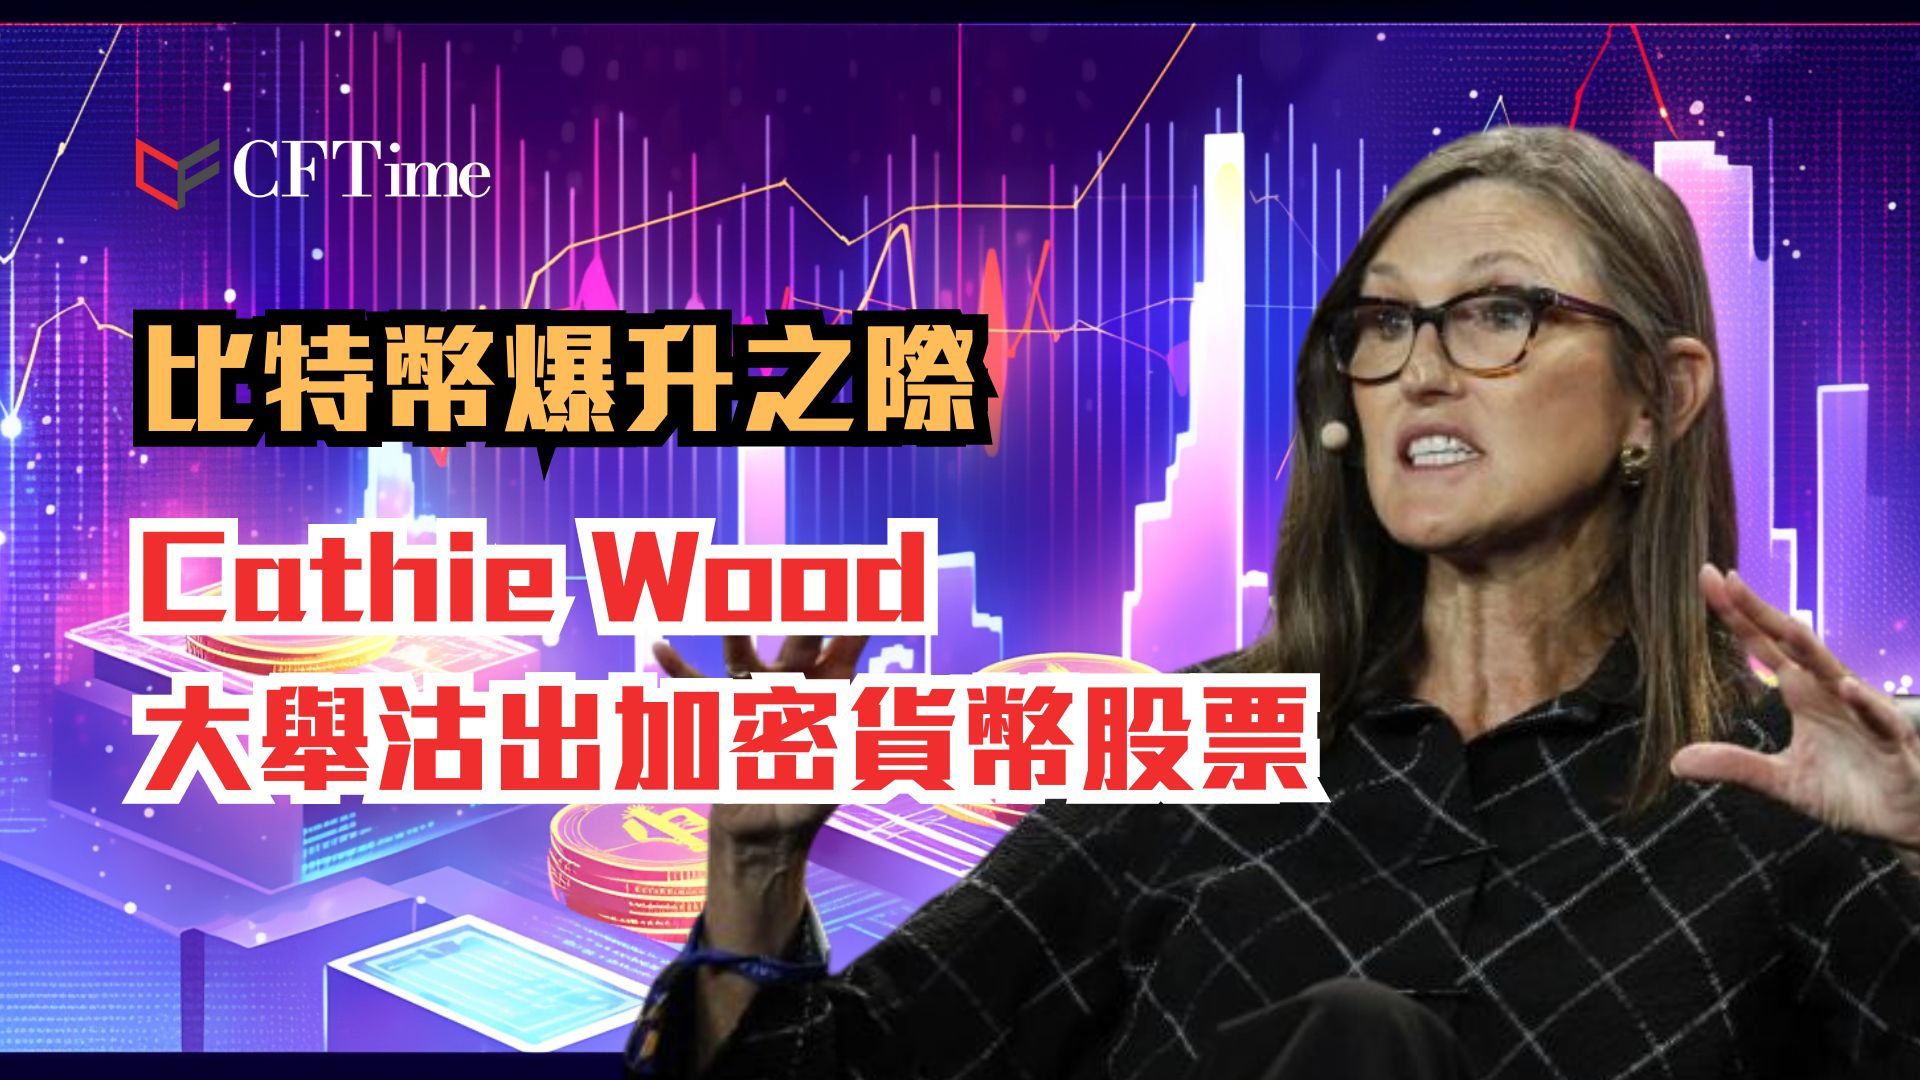 Cathie Wood大舉沽出加密貨幣股票